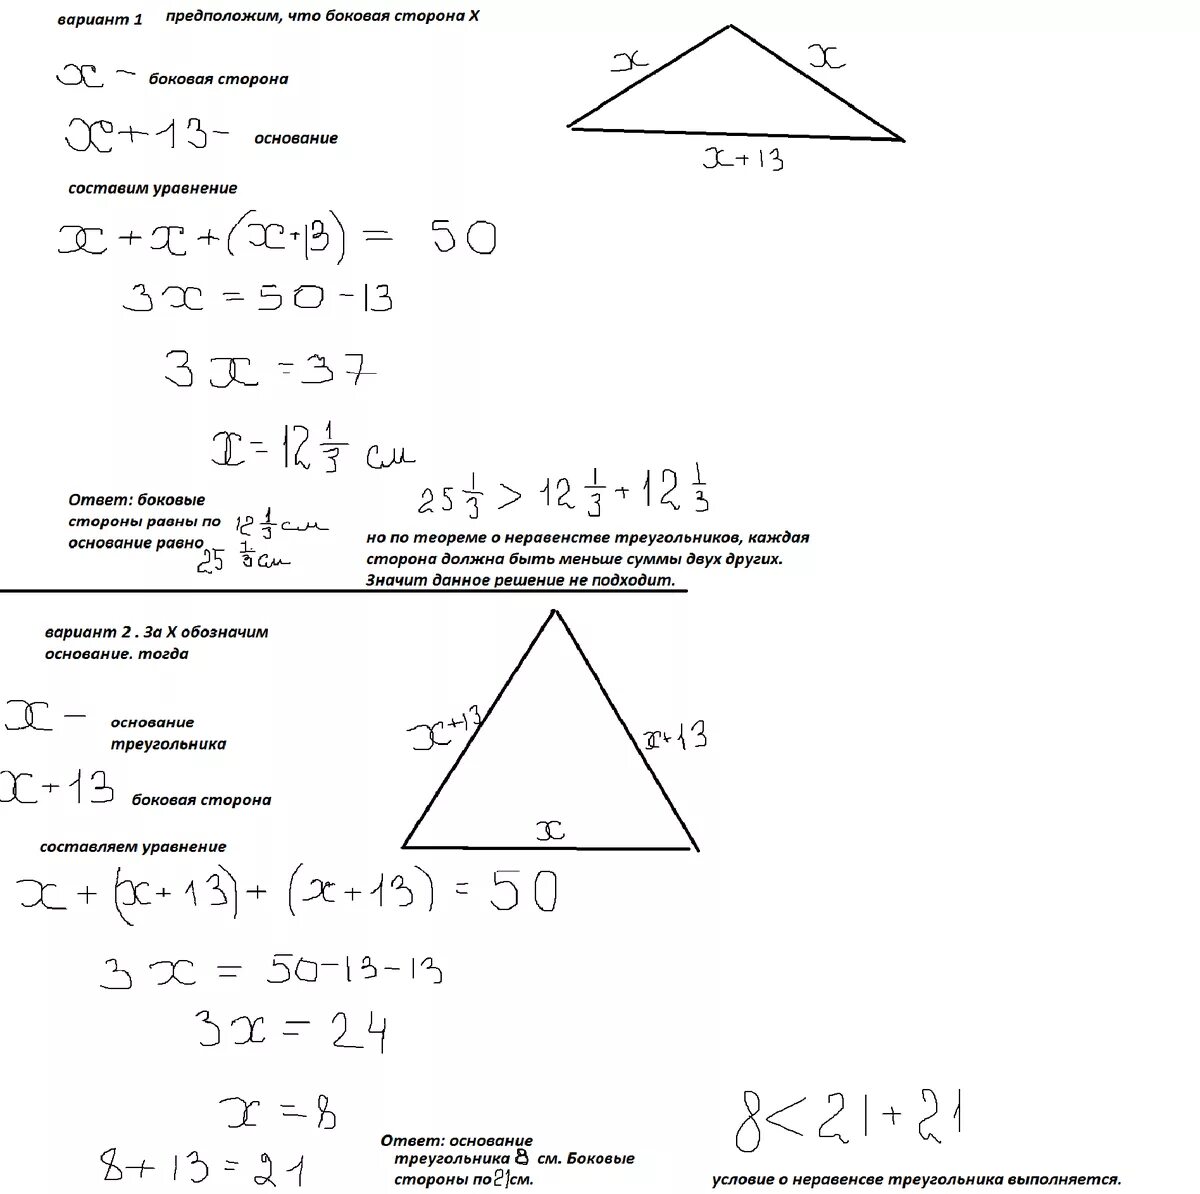 Периметр равнобедренного тупоугольного треугольника равен 60. Периметр равнобедренного треугольника. Периметр равнобедренного треугольника равен. Периметр равнобедренного треугольника равен 50. Периметр равнобедренного тупоугольного треугольника.